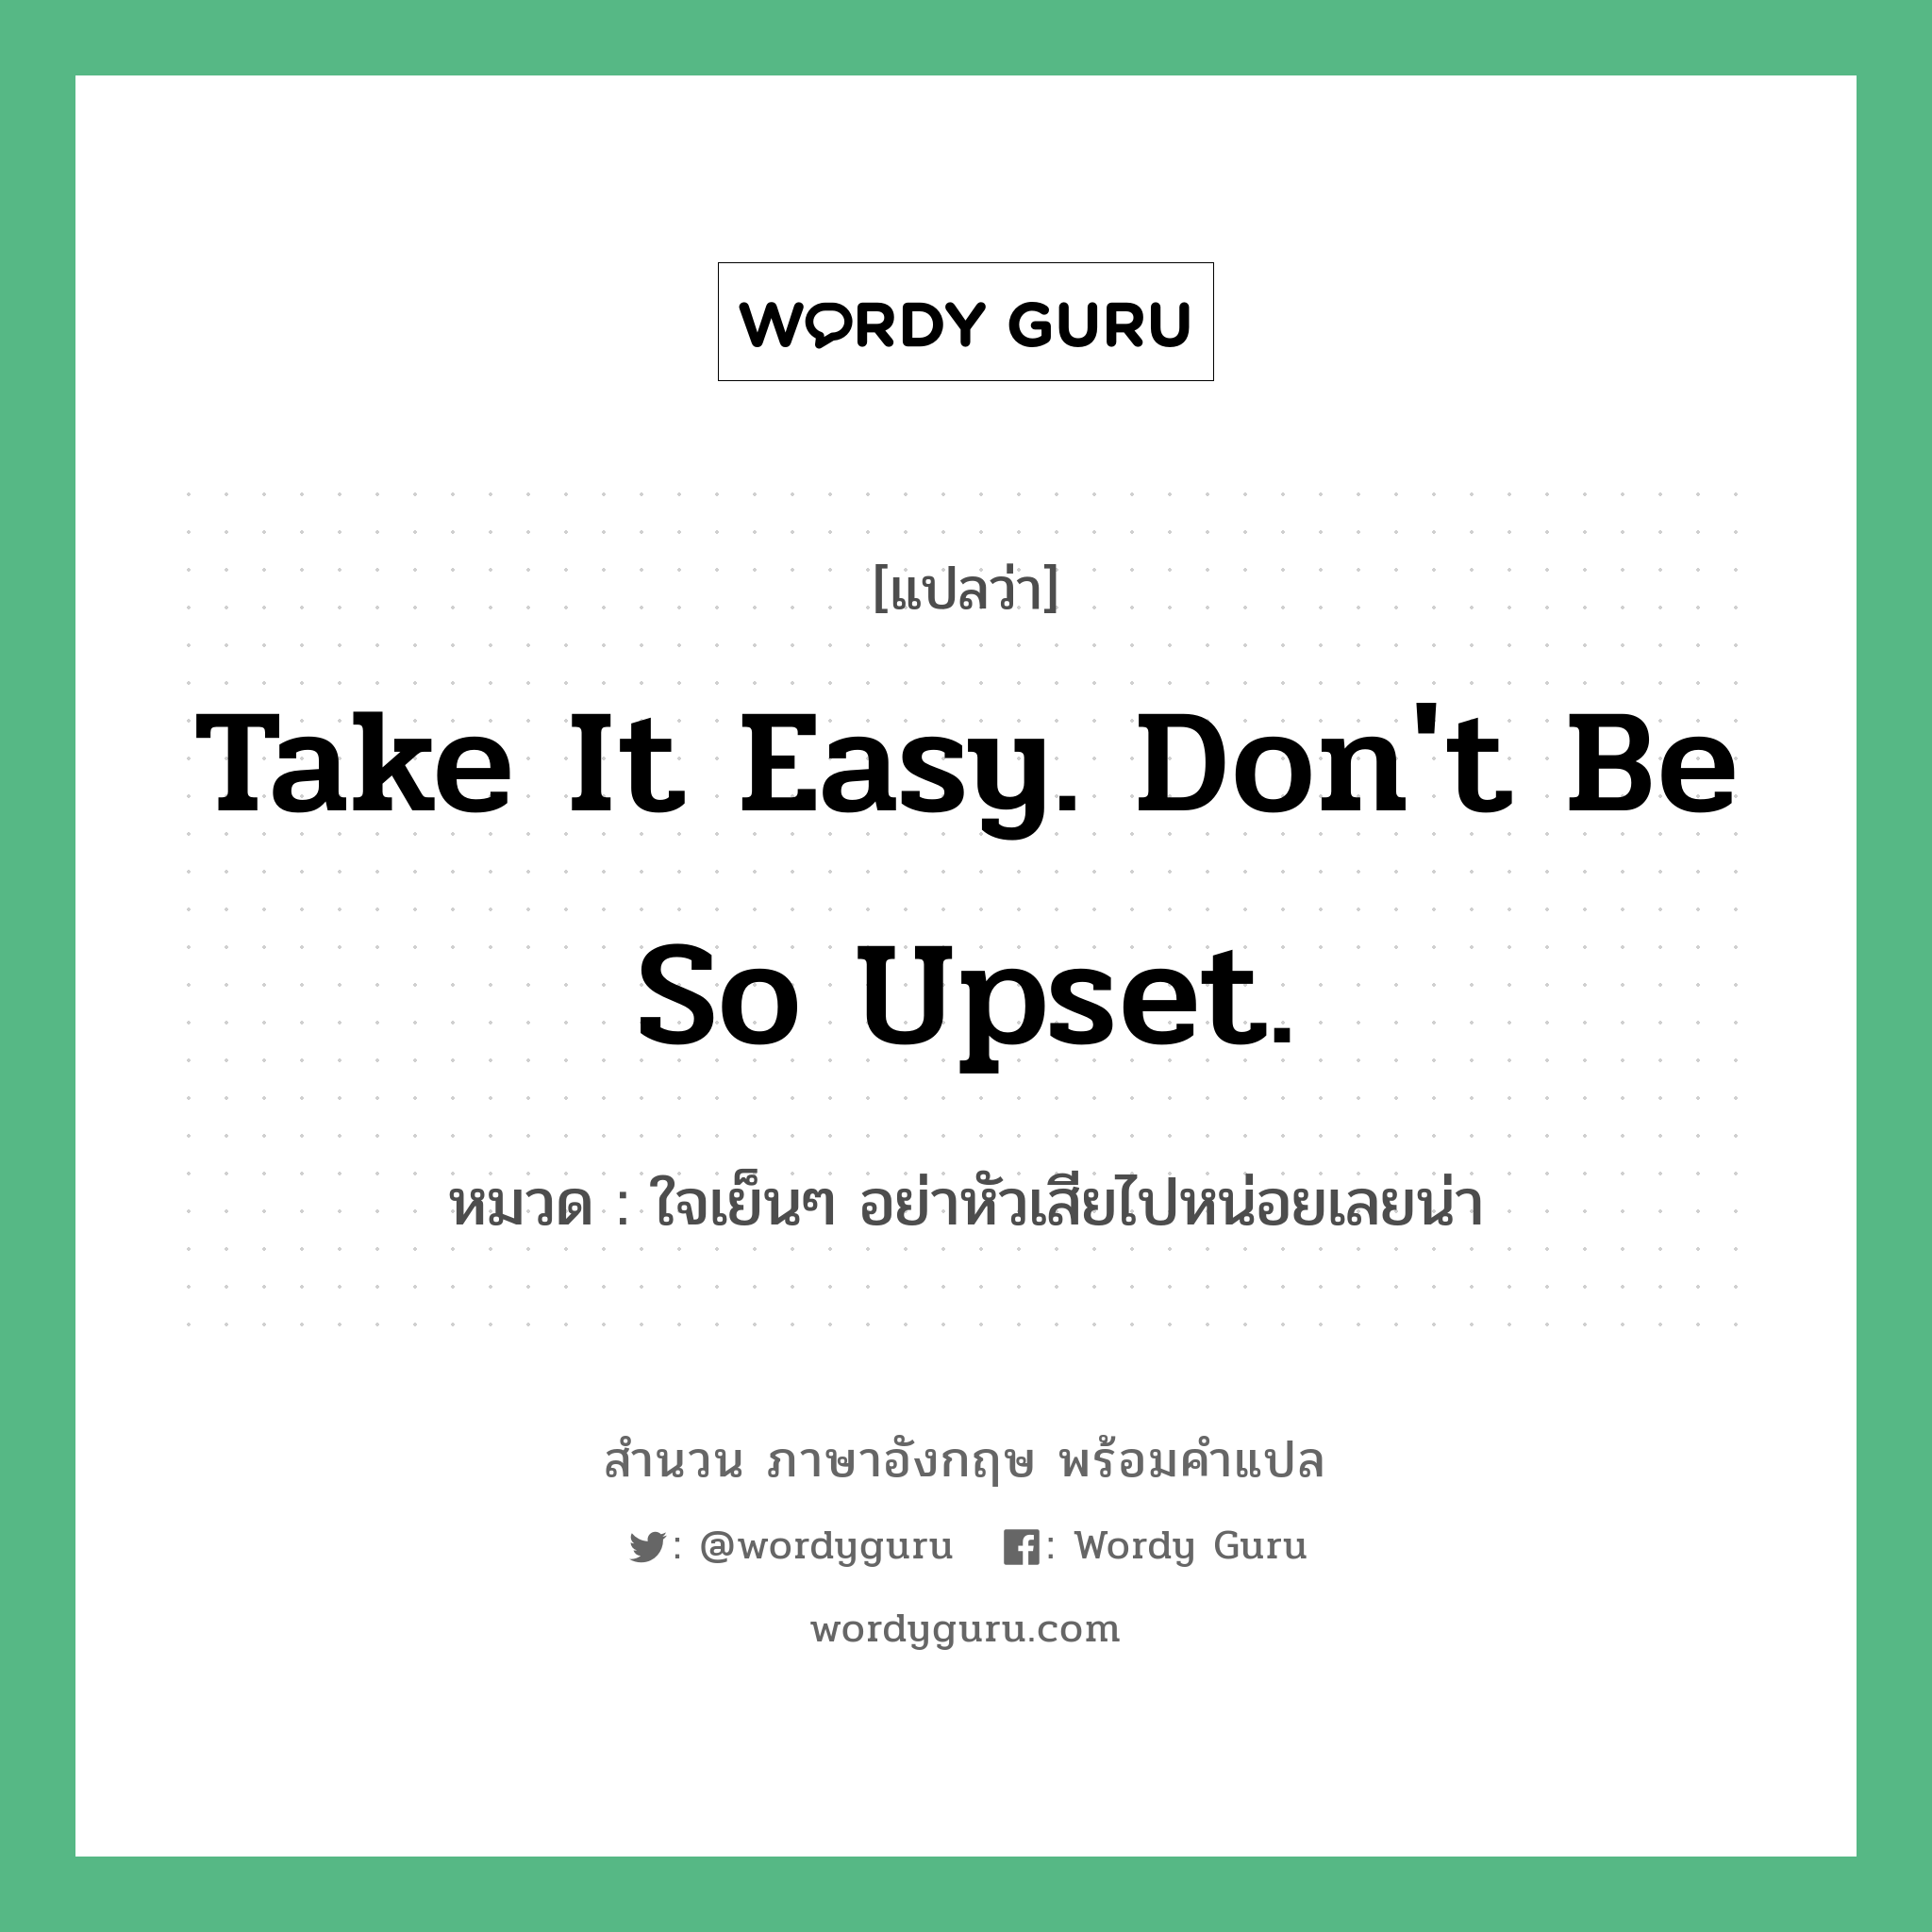 Take it easy. Don't be so upset. แปลว่า?, สำนวนภาษาอังกฤษ Take it easy. Don't be so upset. หมวด ใจเย็นๆ อย่าหัวเสียไปหน่อยเลยน่า